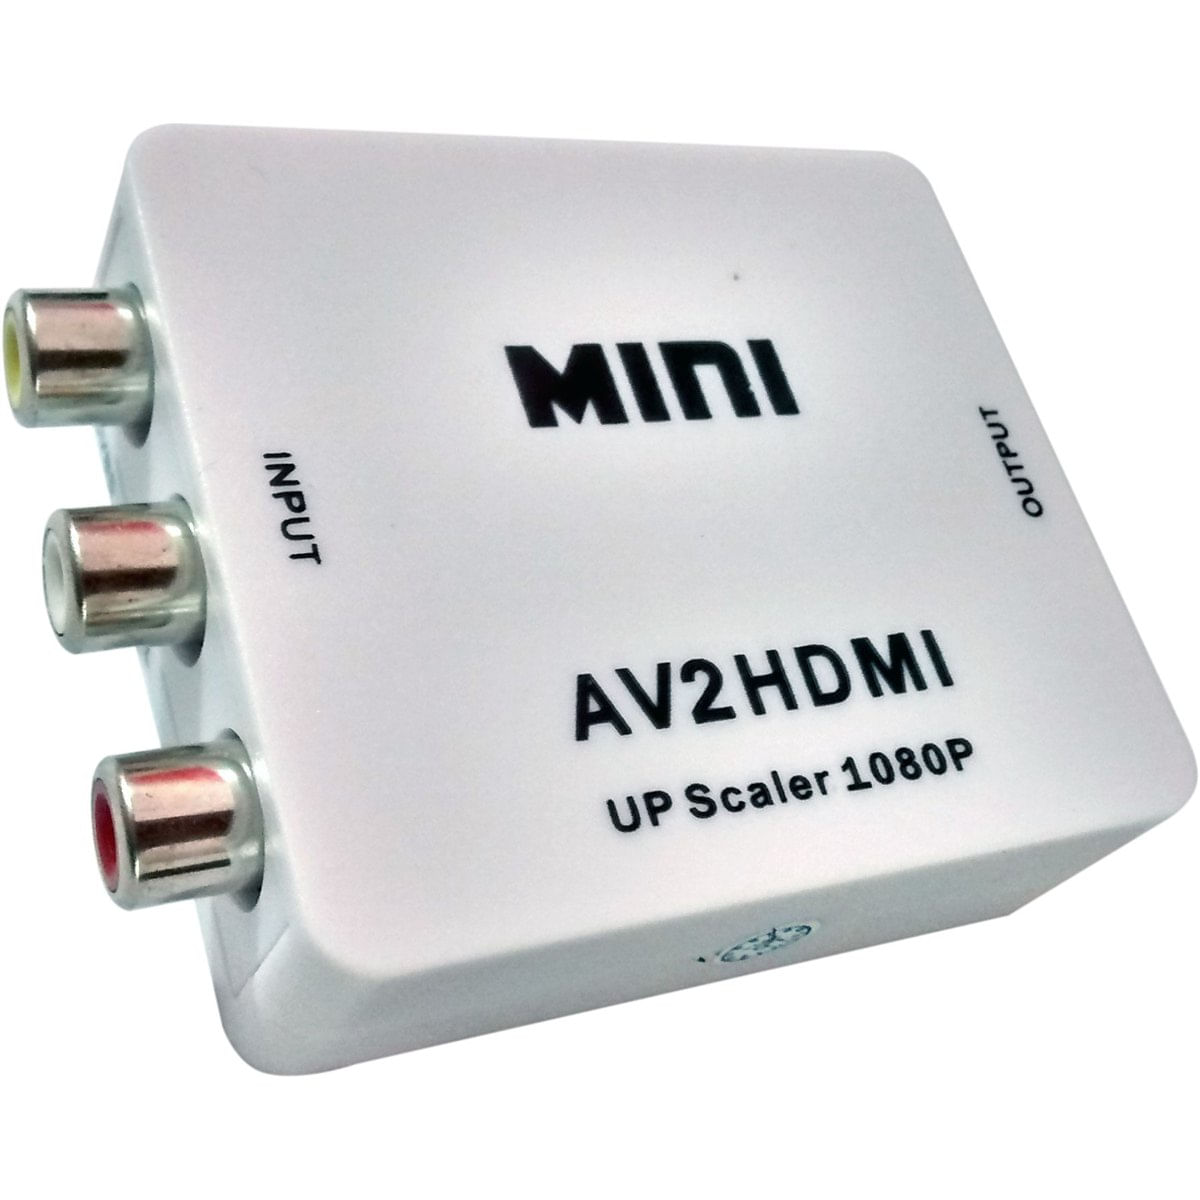 Menor preço em Mini Conversor Adaptador RCA para HDMI 720p ou 1080p